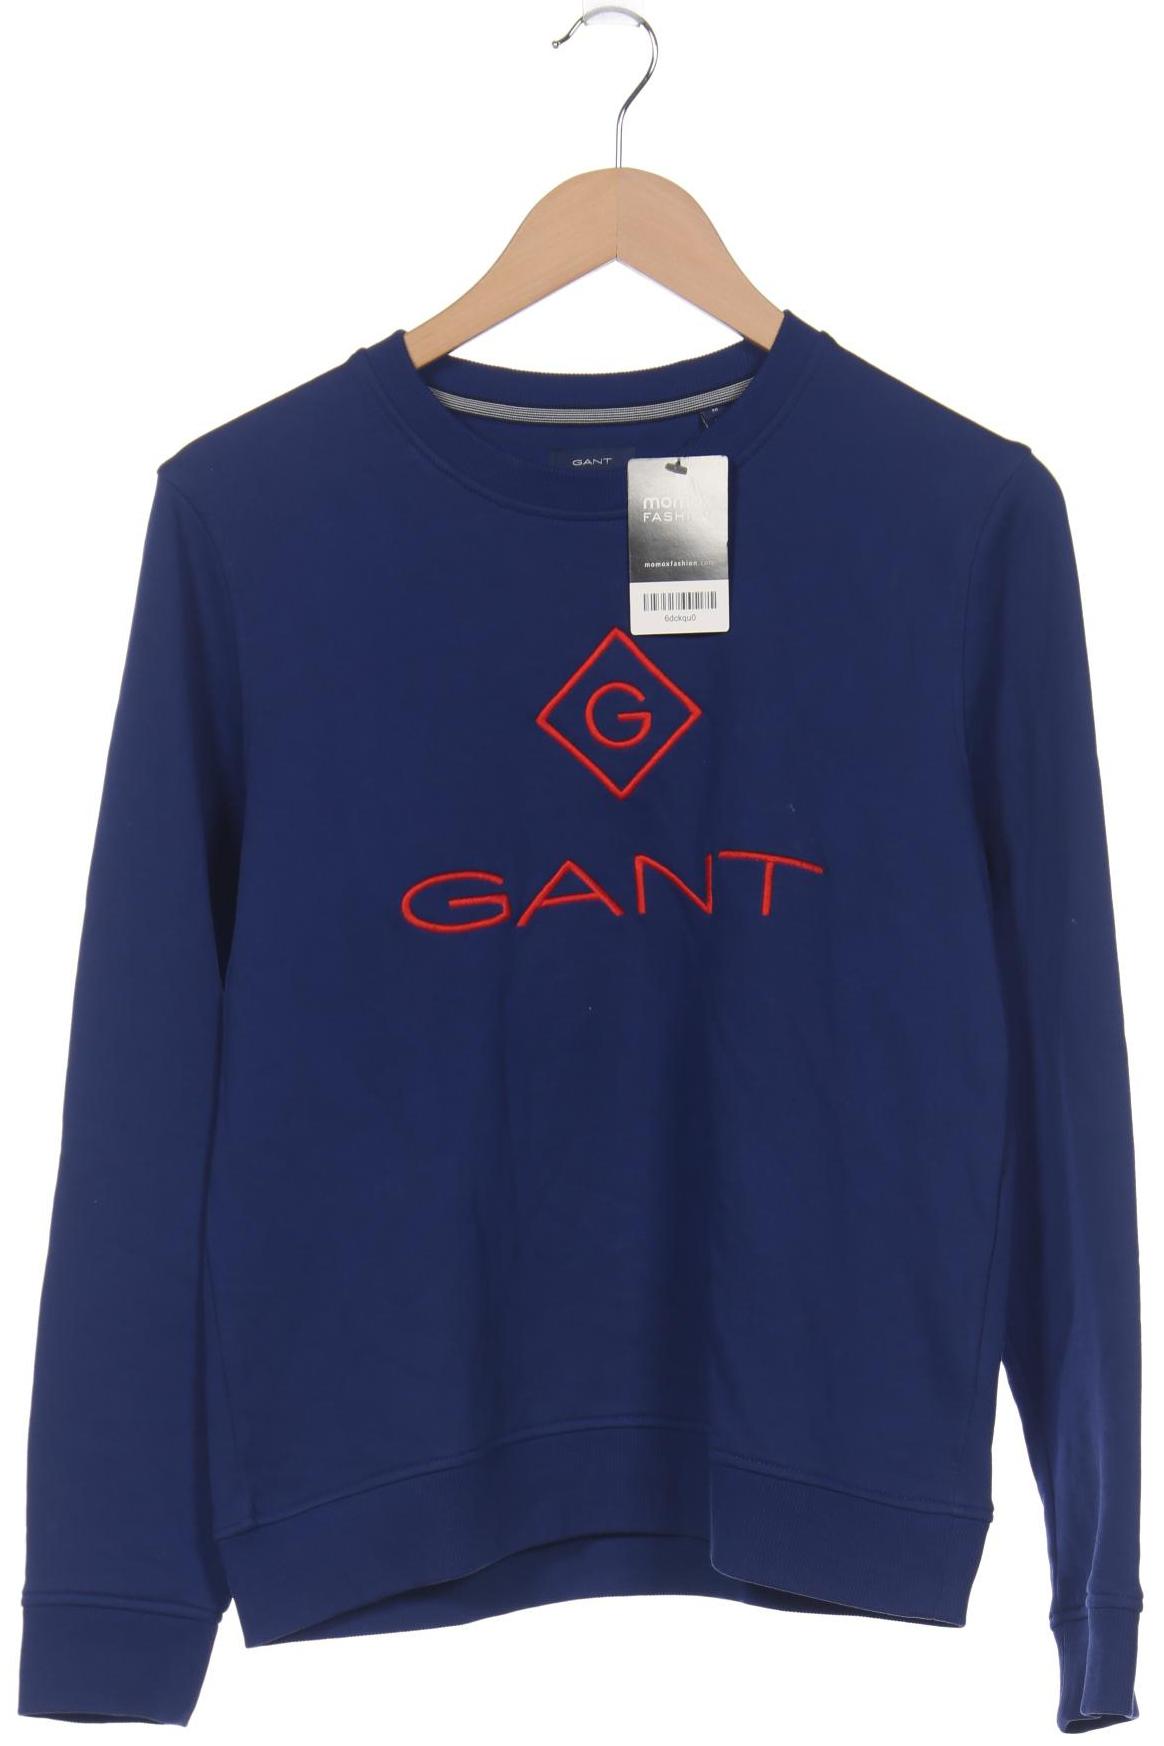 GANT Damen Sweatshirt, blau von Gant